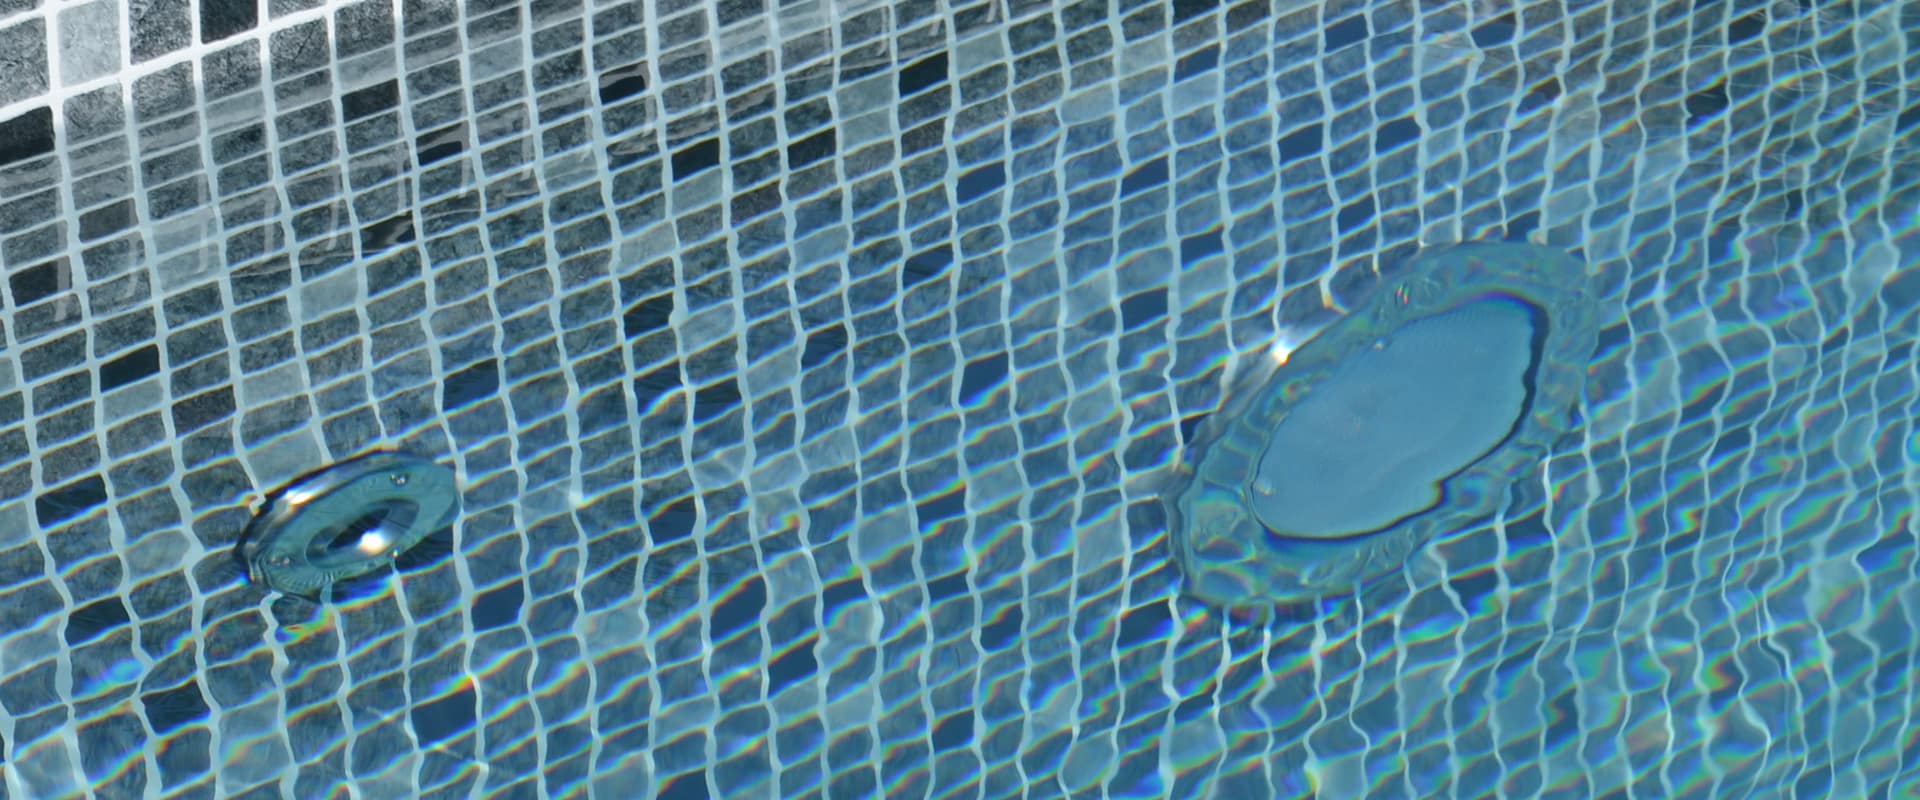 Rostfria pooldetaljer som gör att din pool blir unik & tilltalande